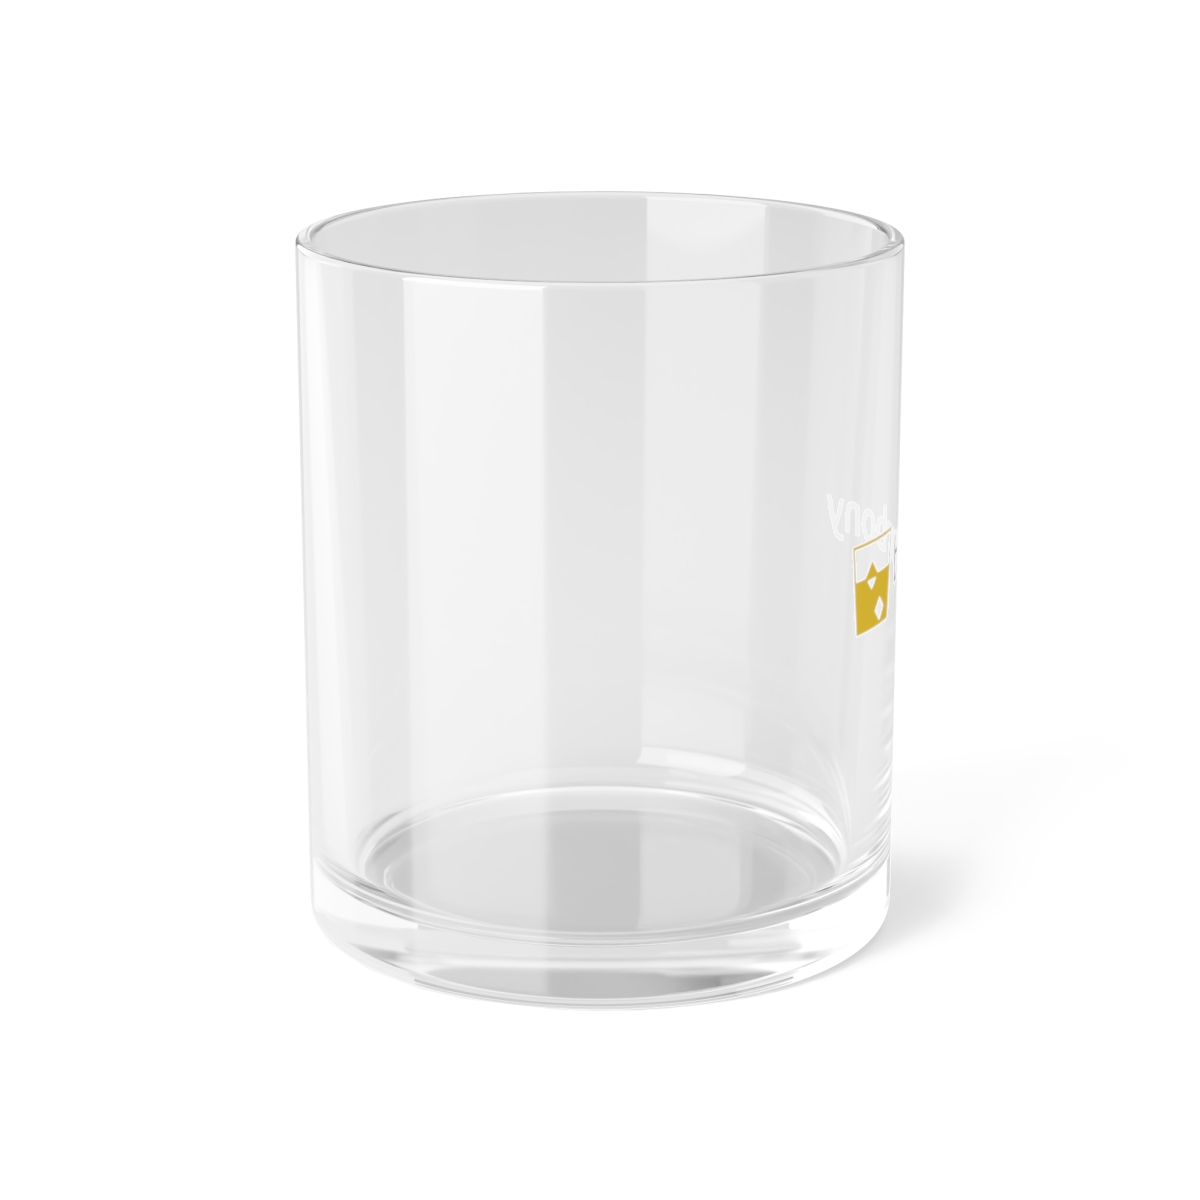 Bourbony Logo Bar Glass product thumbnail image